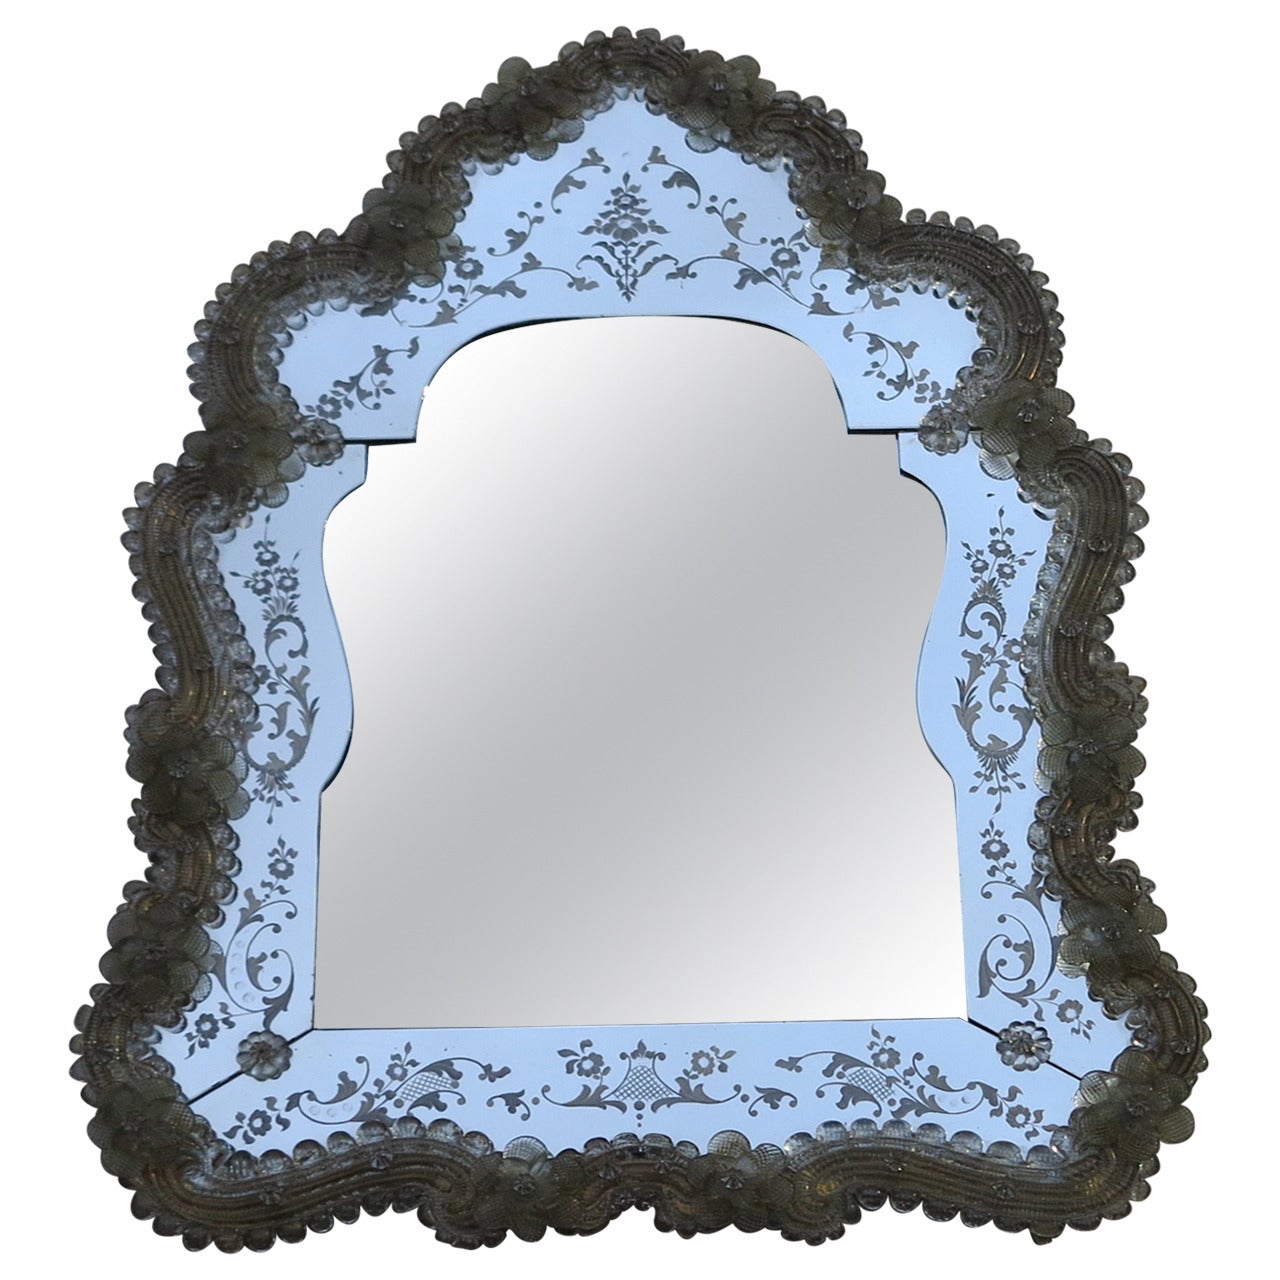 Miroir crête de Veronese avec un miroir biseauté au centre